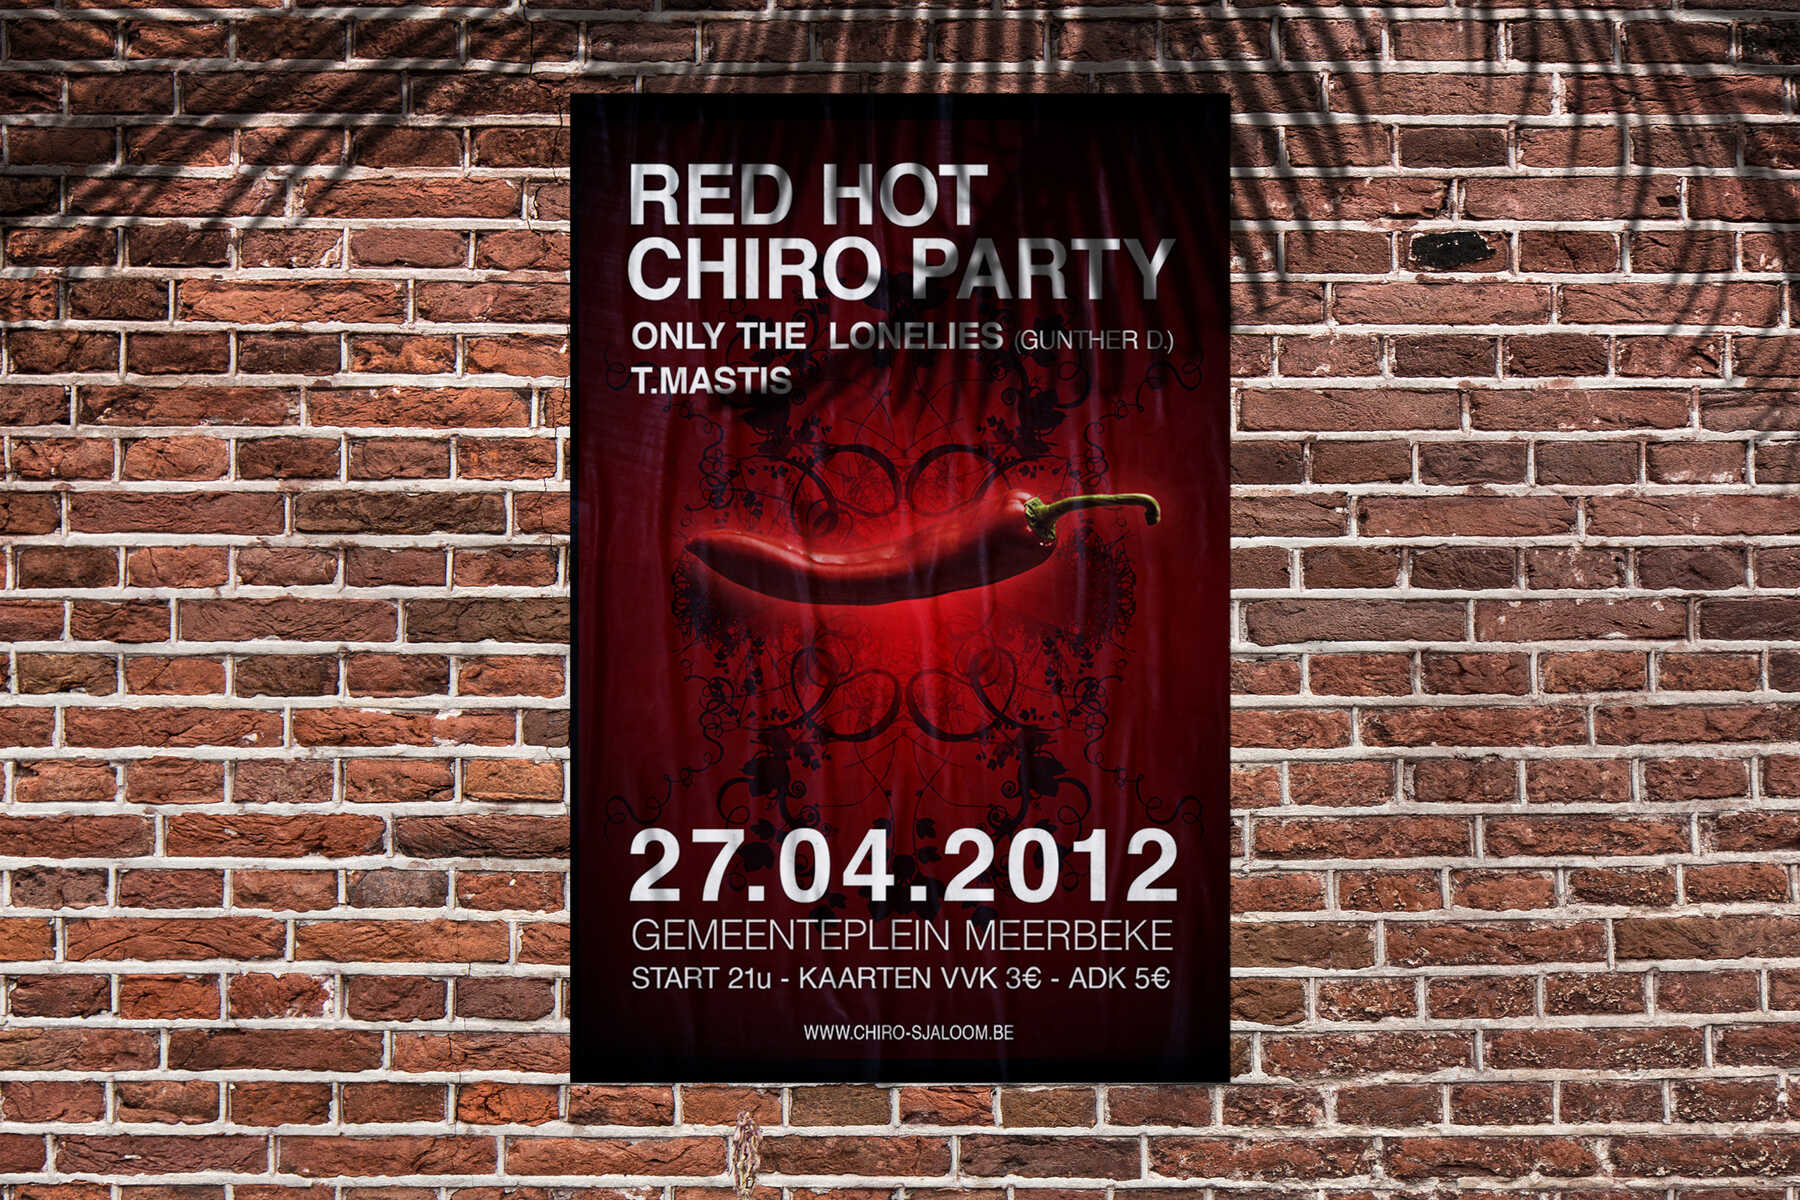 Chiro Sjaloom Meerbeke party 2012 poster